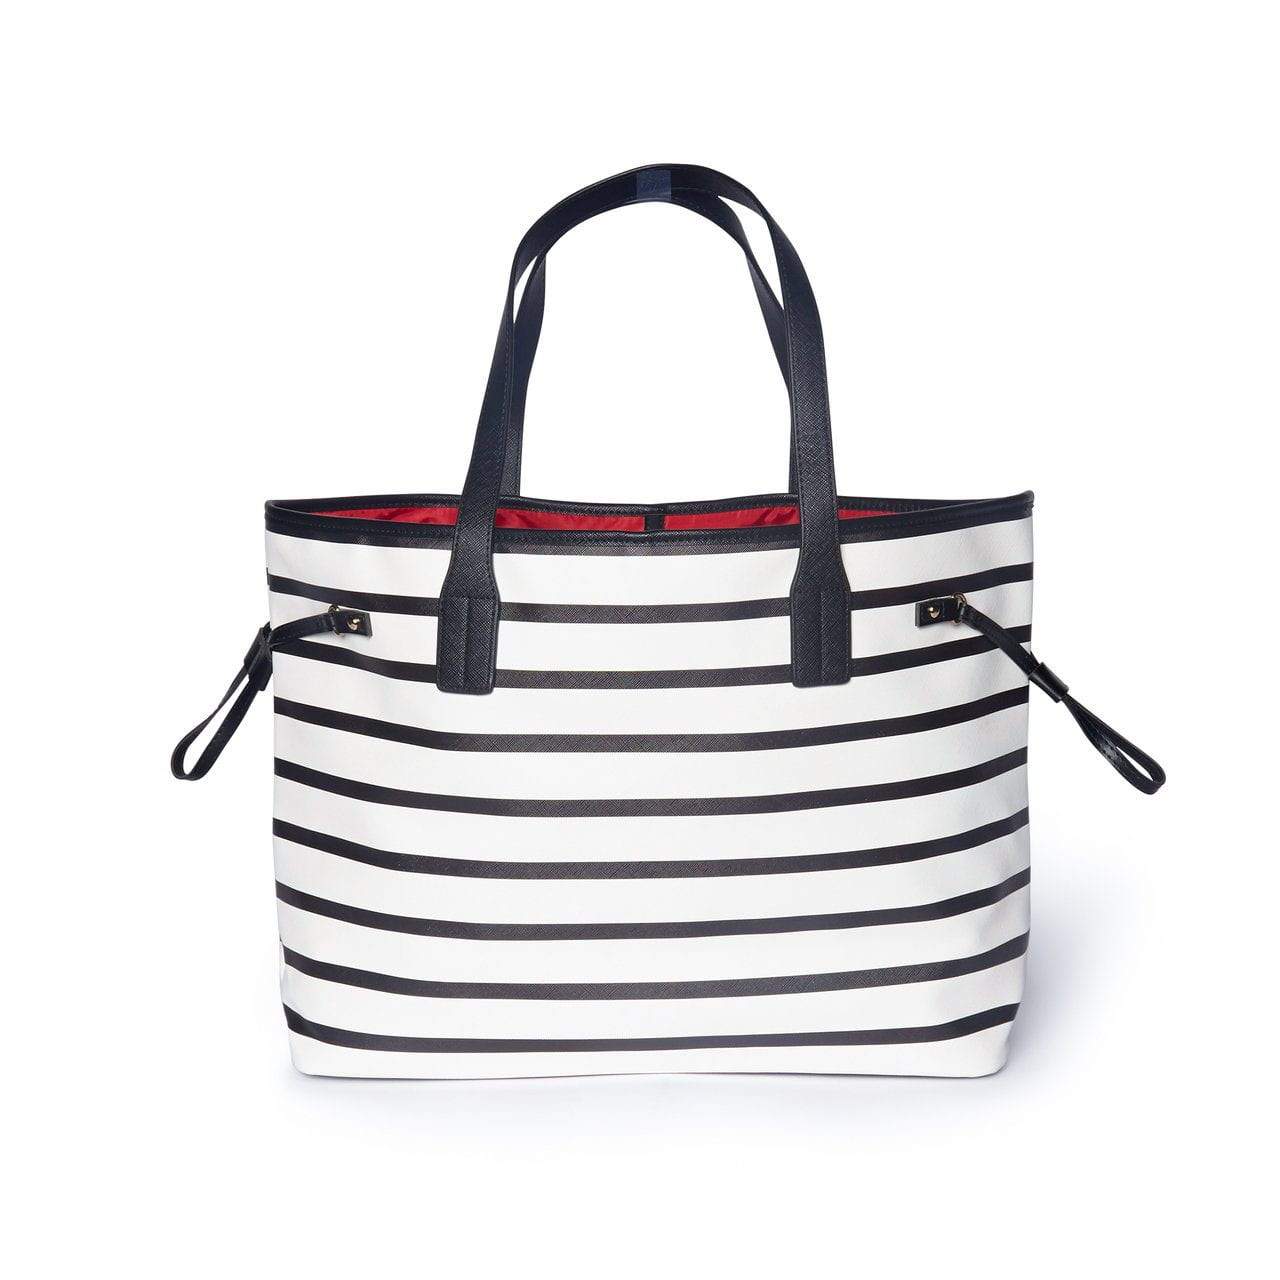 Brouk & Co Handbags Mia Handbag